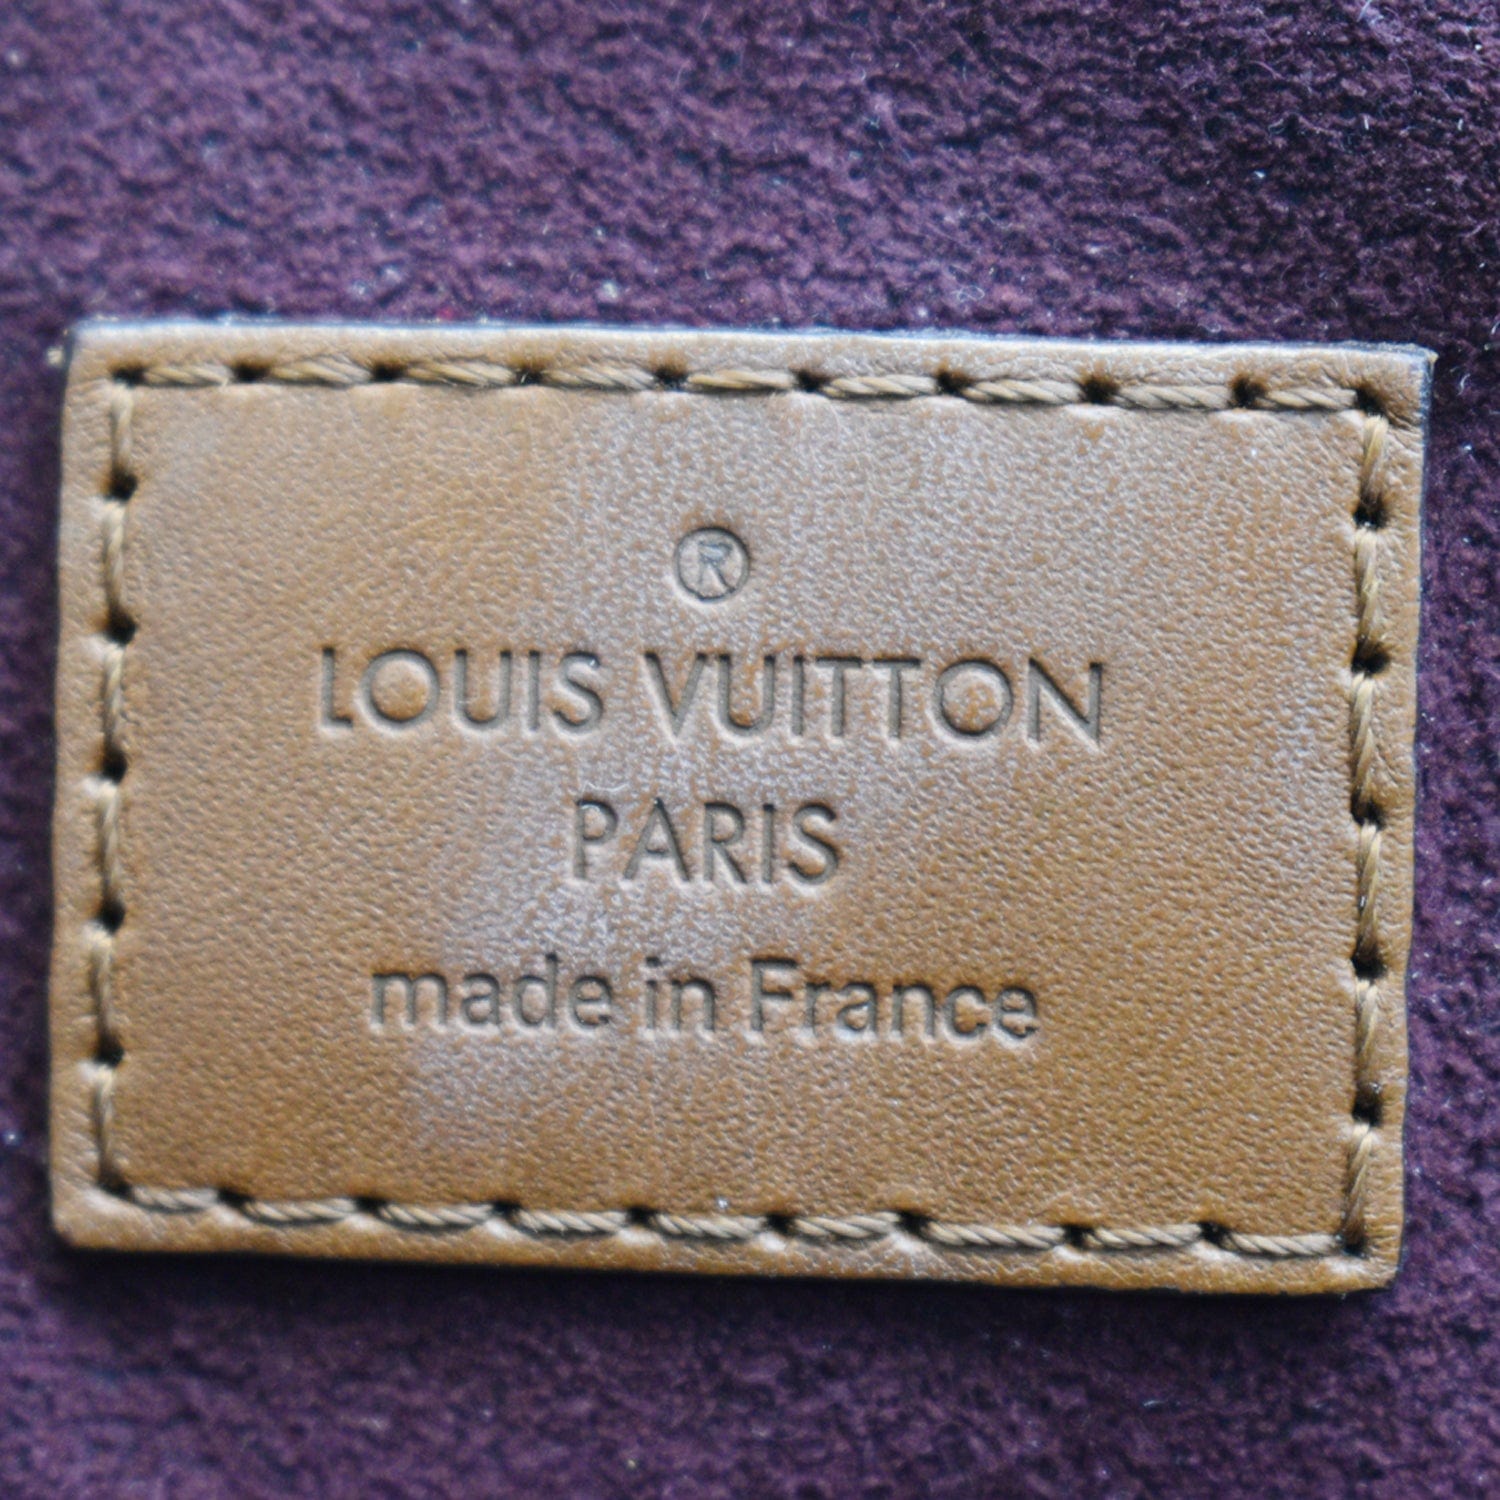 🚨DESIGNER STEAL🚨 Louis Vuitton Belmont PM Tote Bag “Noir” $1000